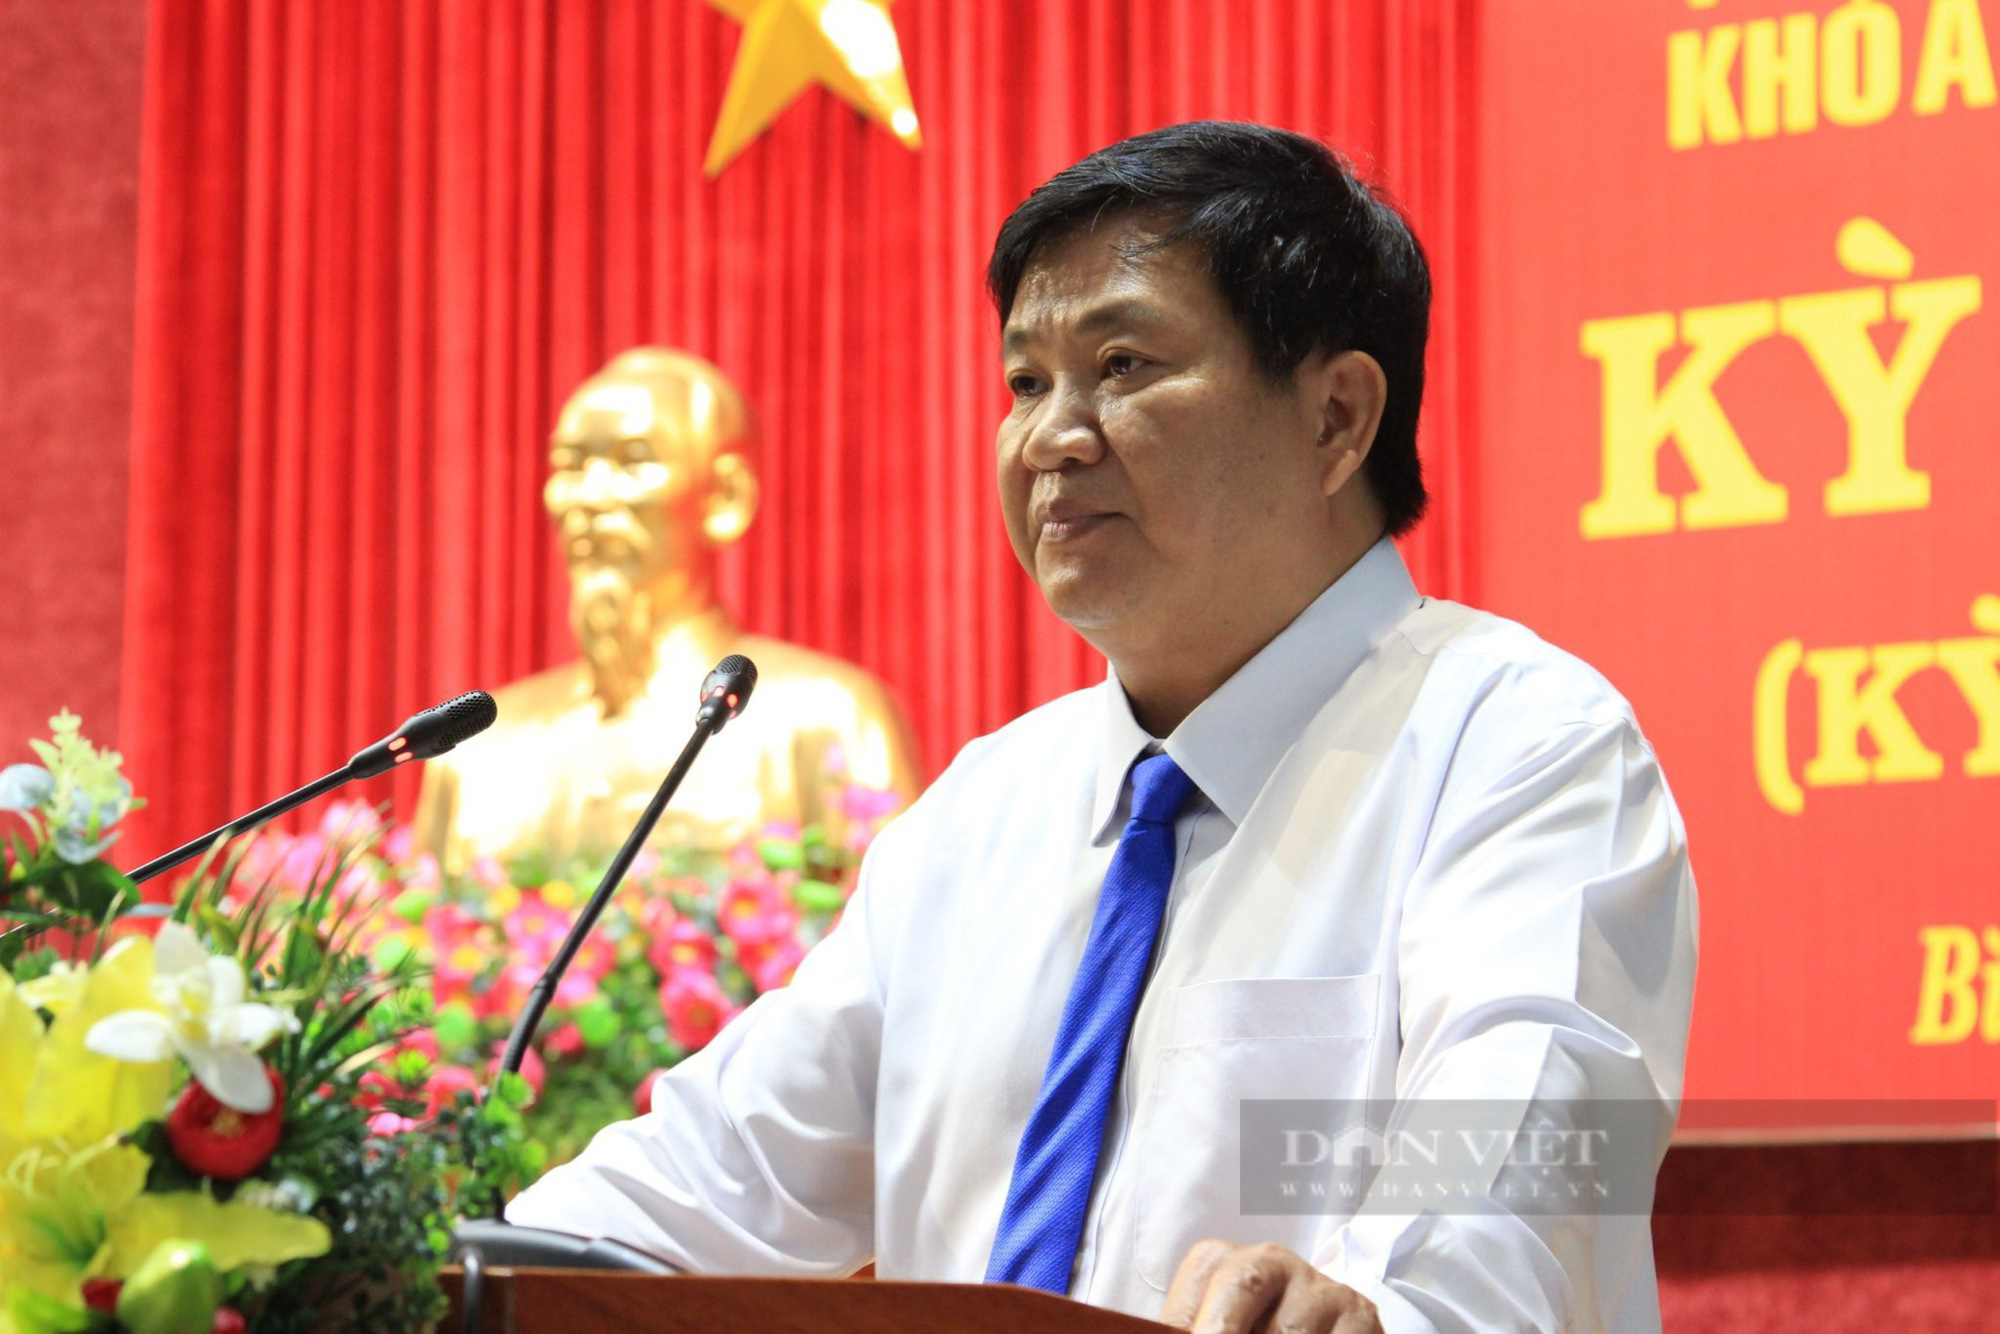 Nghị quyết HĐND tỉnh Bình Định ban hành 4 năm, dự án gần 1,4km đường chưa thể thi công - Ảnh 5.